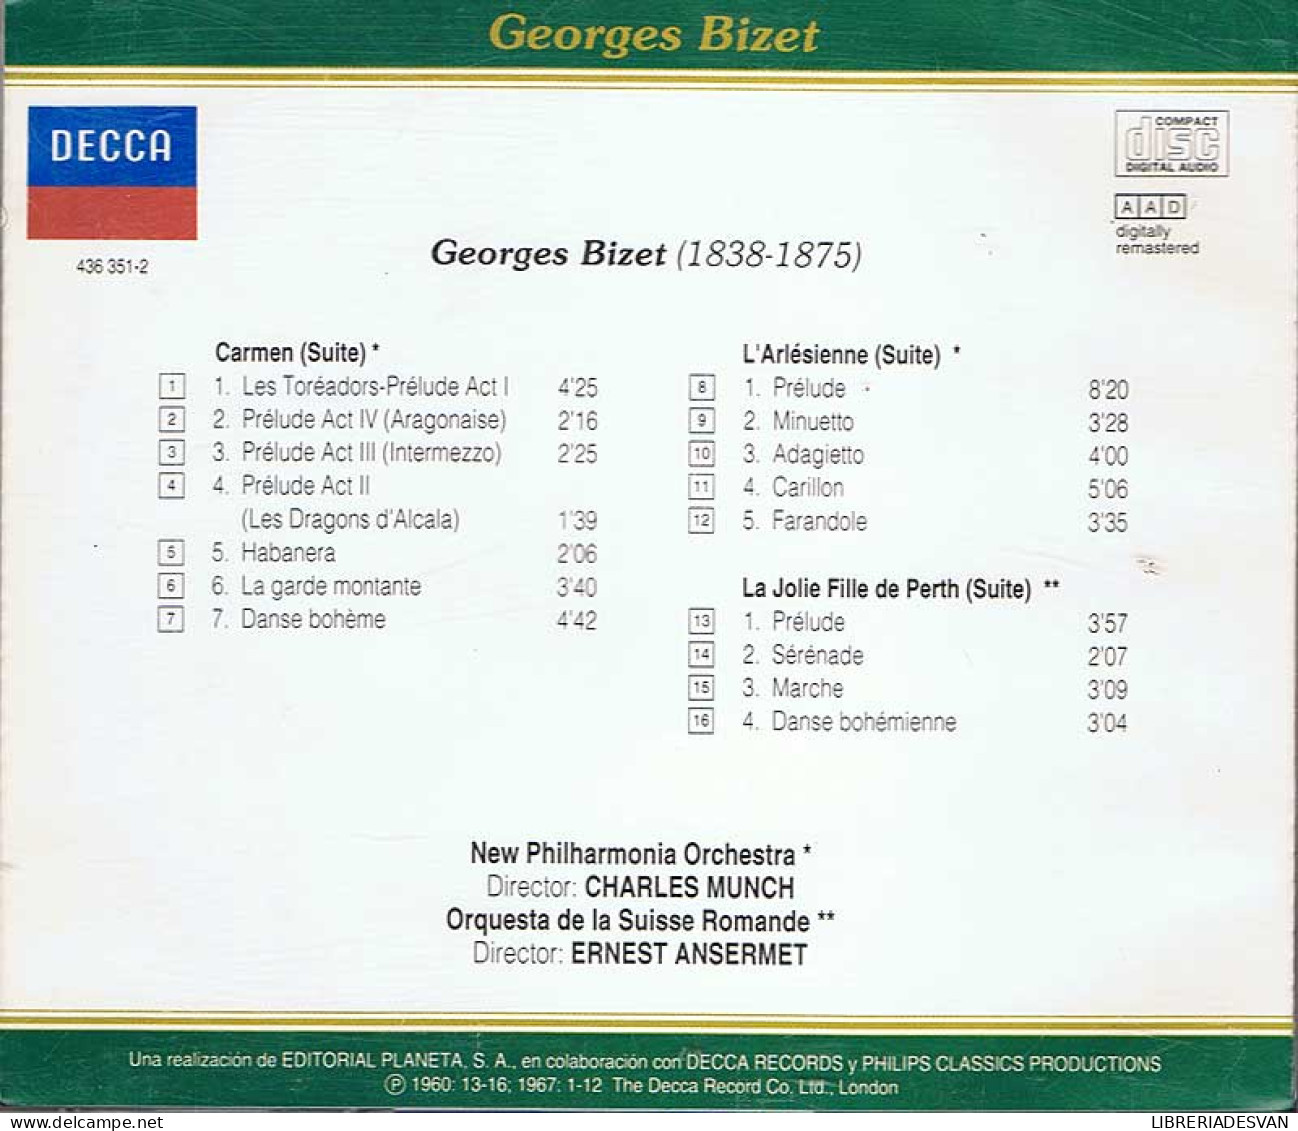 Georges Bizet - Clásicos Universales Nº 46. CD - Klassik